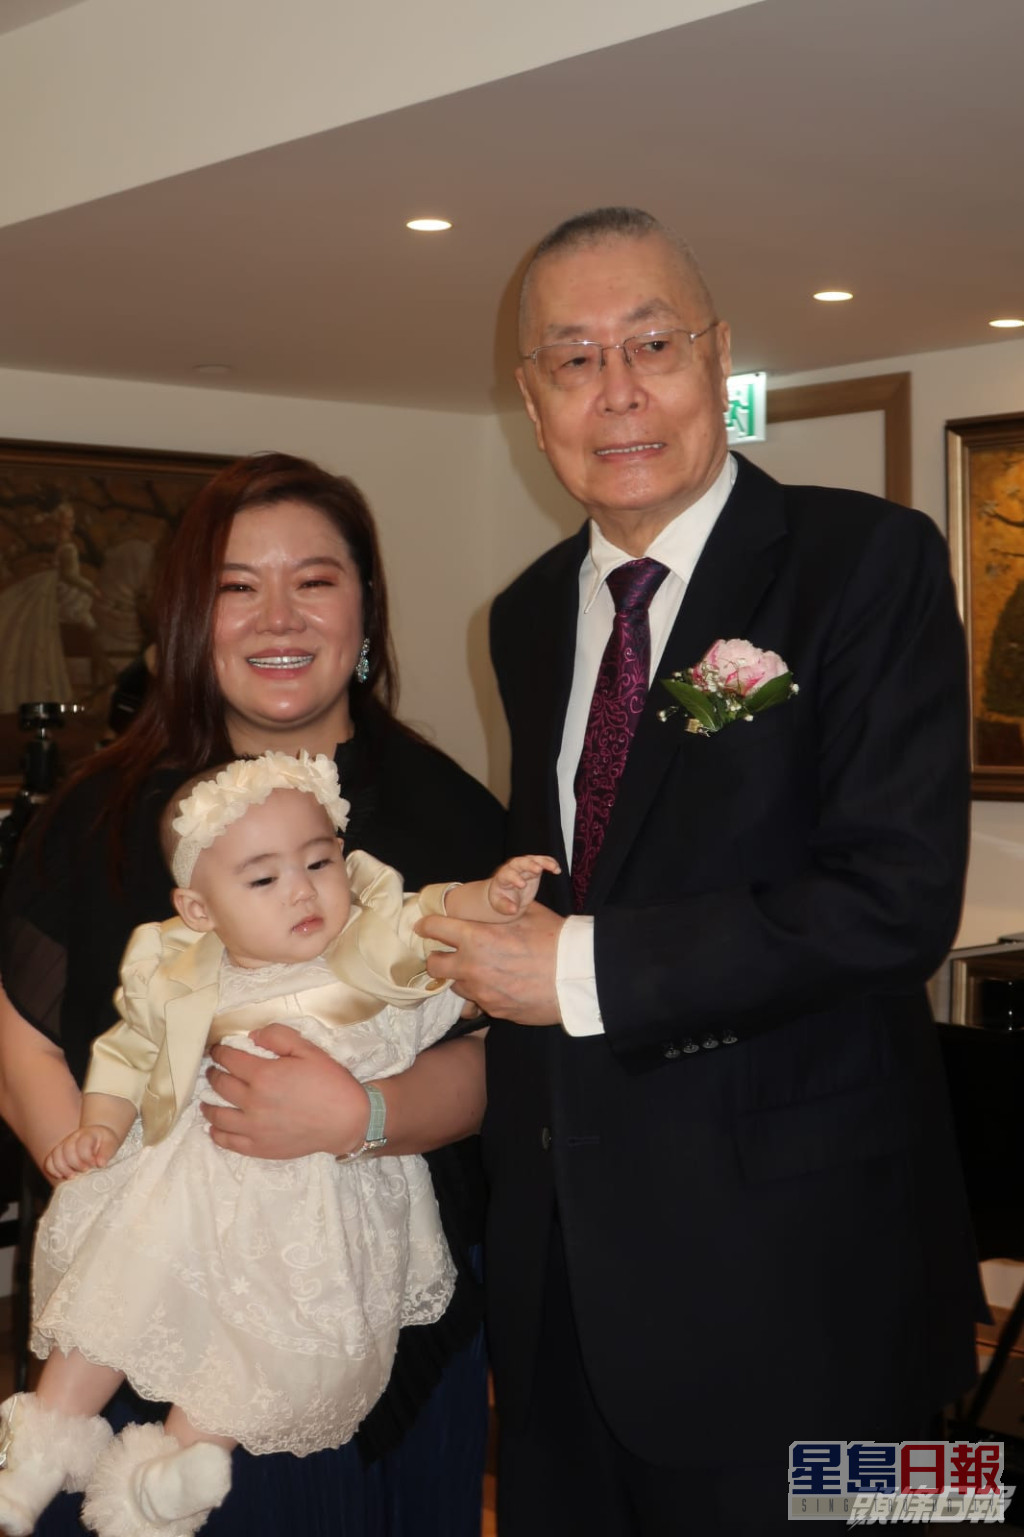 两年前刘诗昆以81岁之龄添女儿「贝贝」。